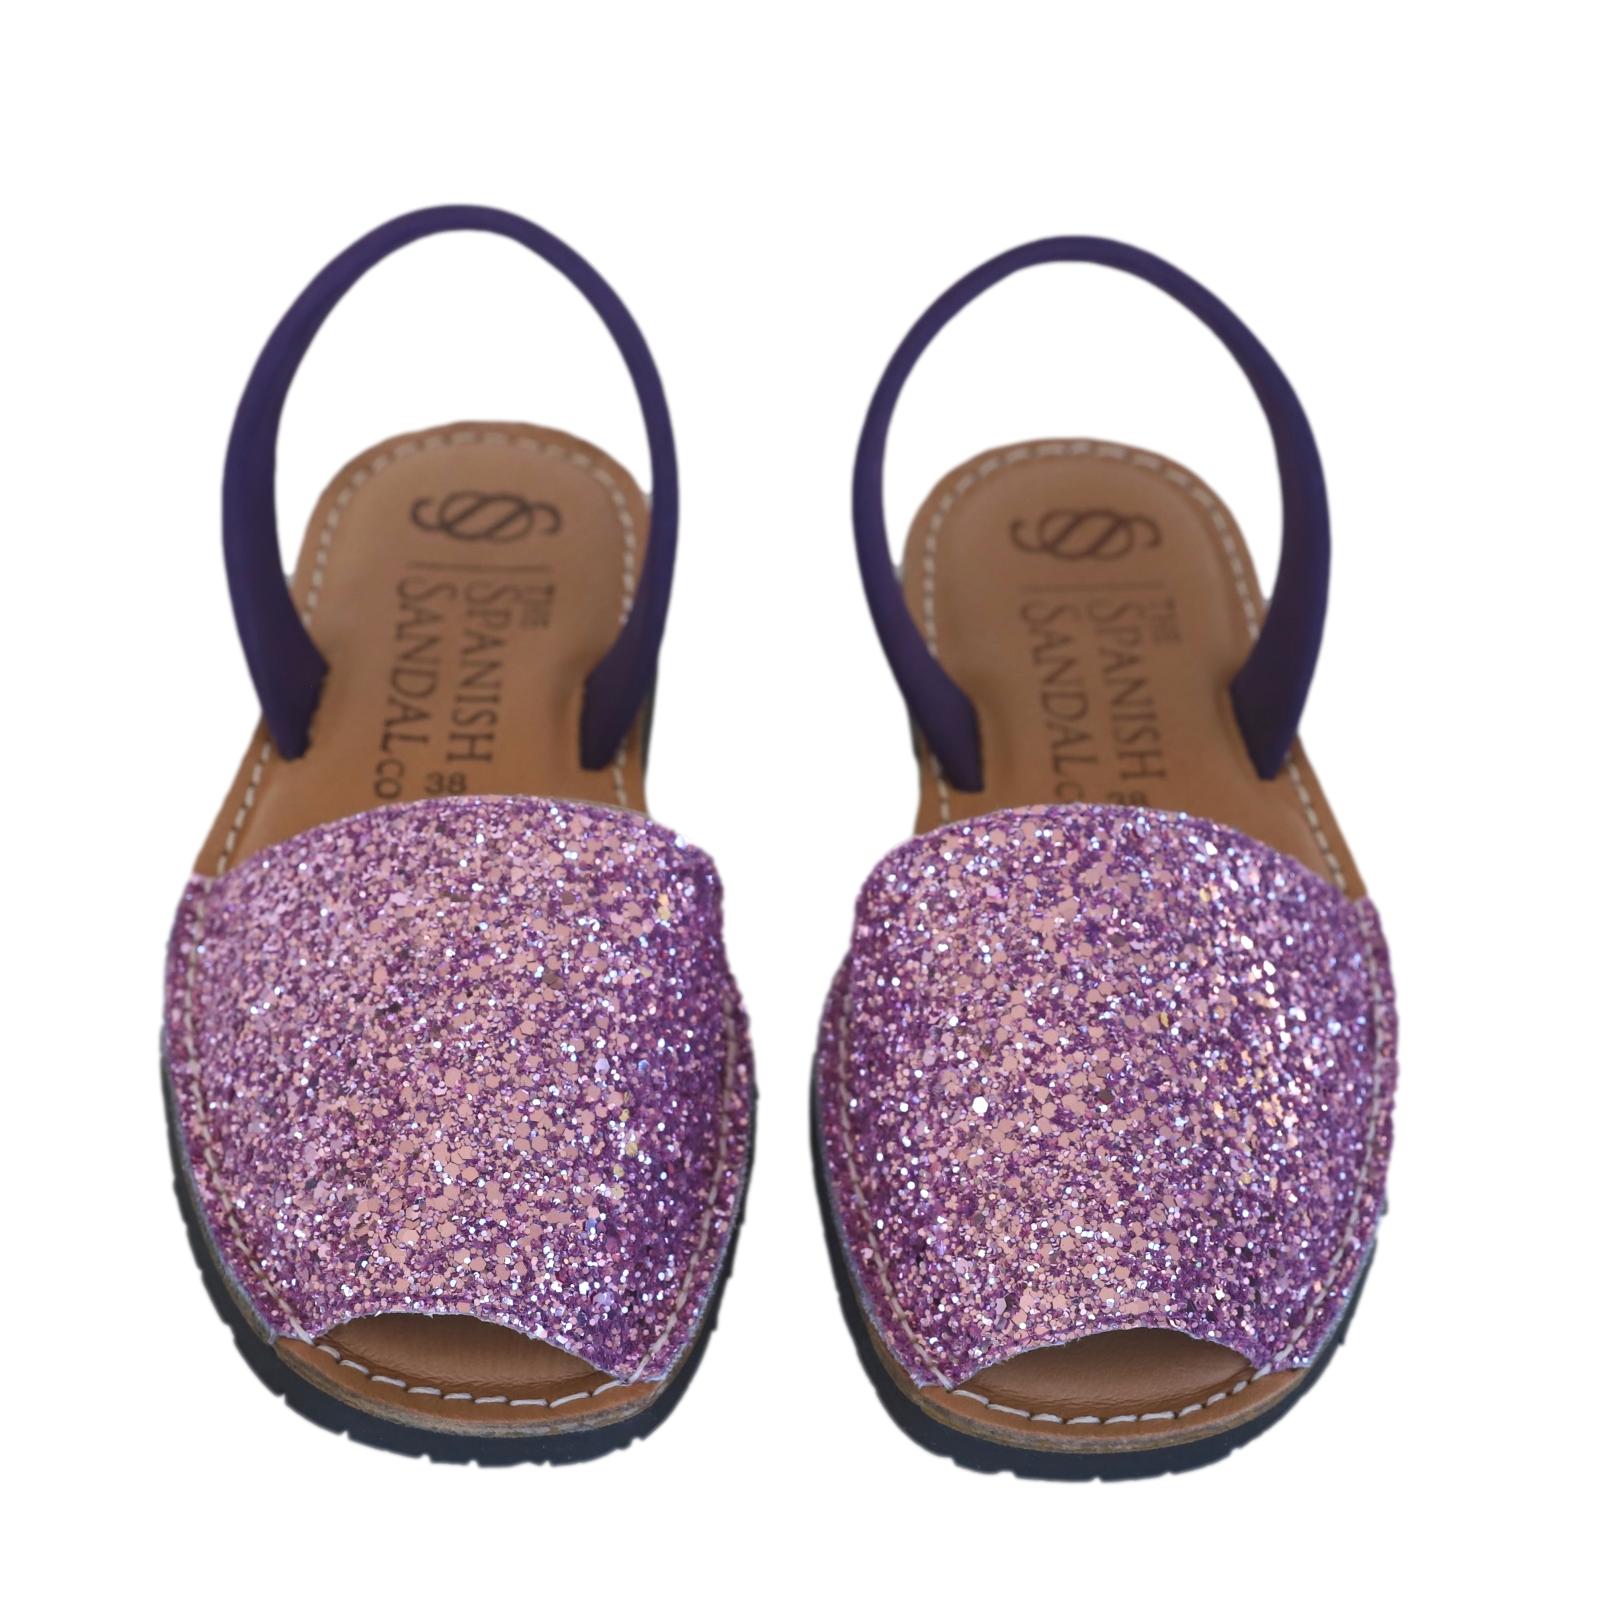 Kids PINK sparkly sandals